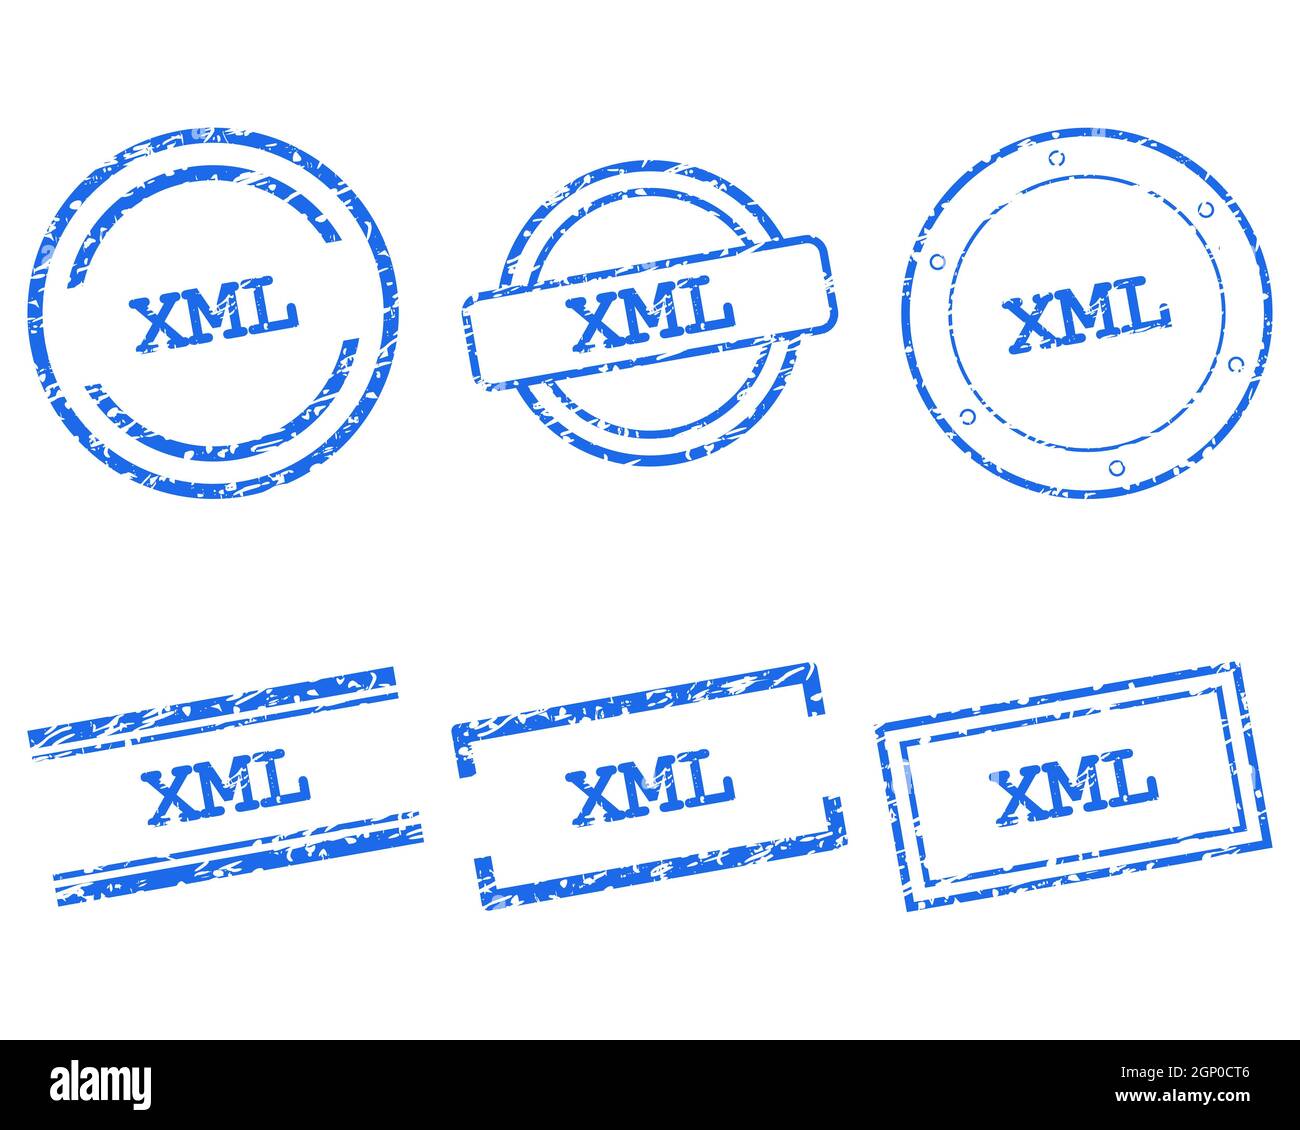 Xml stamps Stock Photo